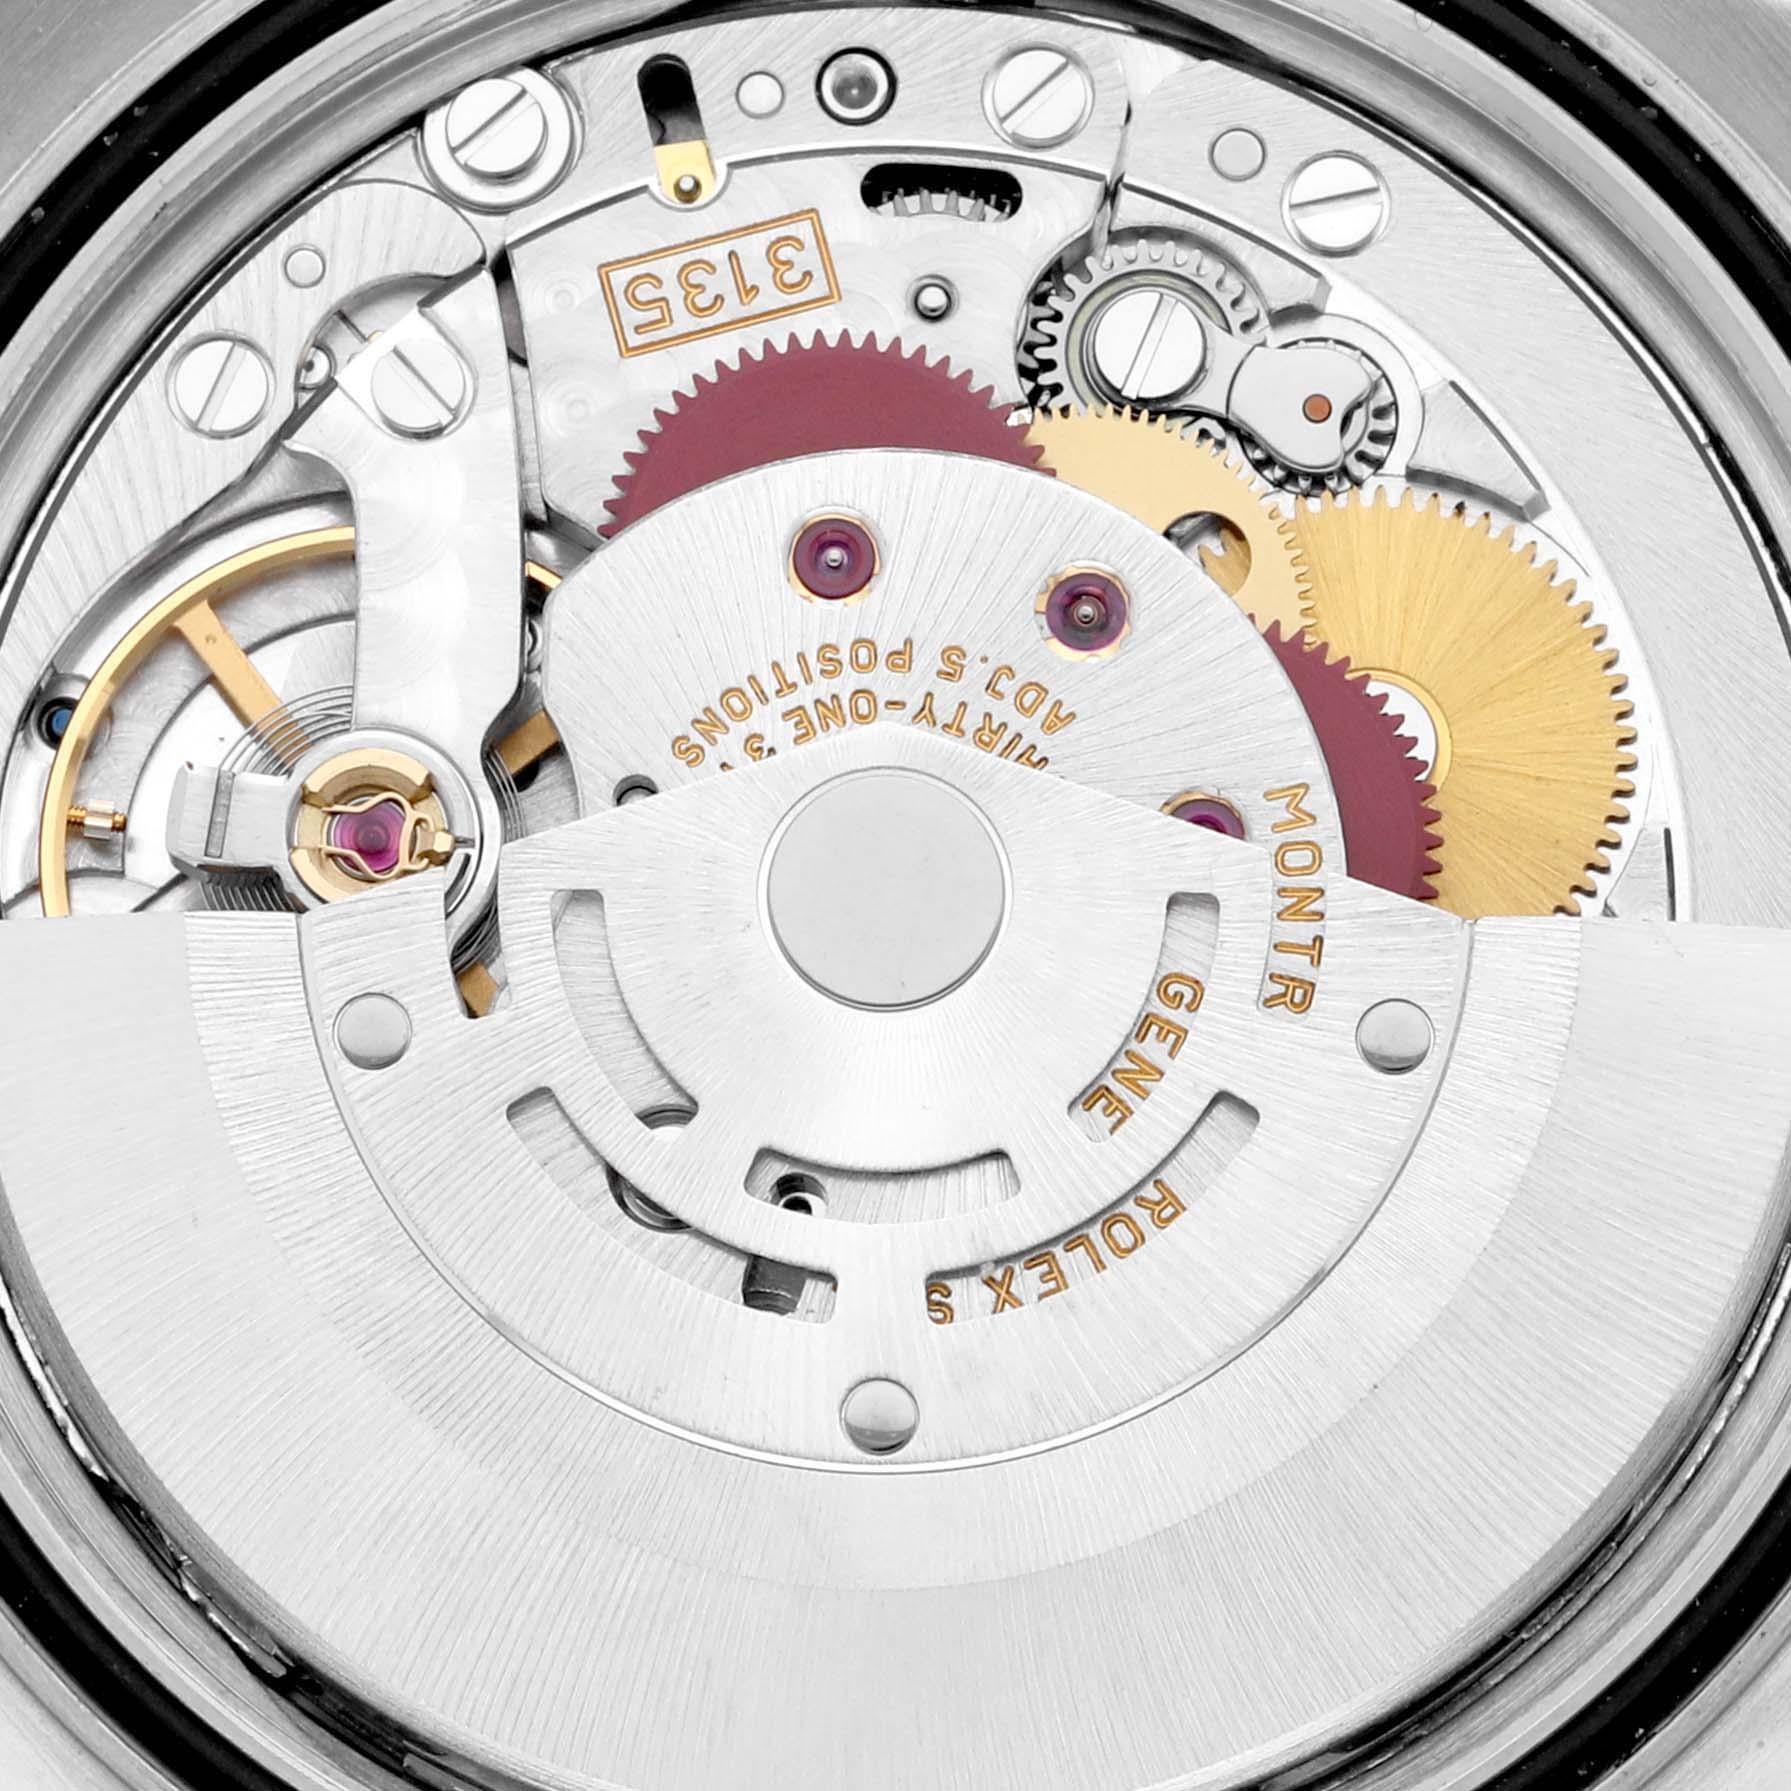 Rolex Datejust Jahrestag Diamant-Zifferblatt Stahl-Gelbgold-Uhr 16233 Box Papiere 4